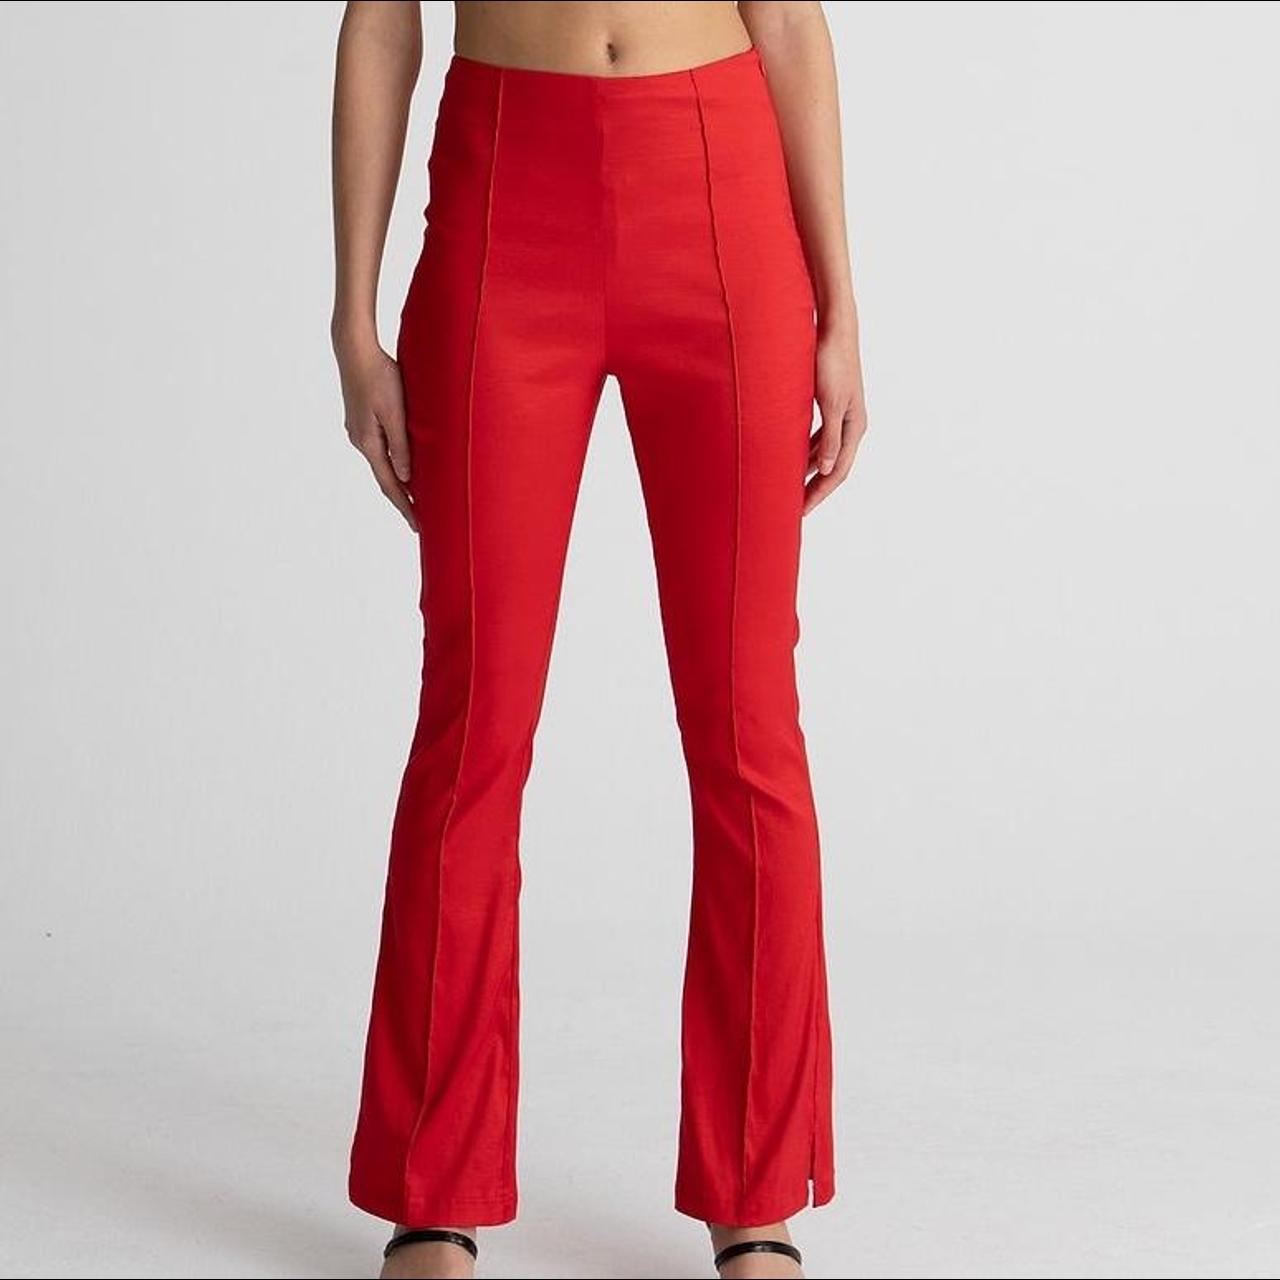 Hosbjerg Women's Red Trousers (4)